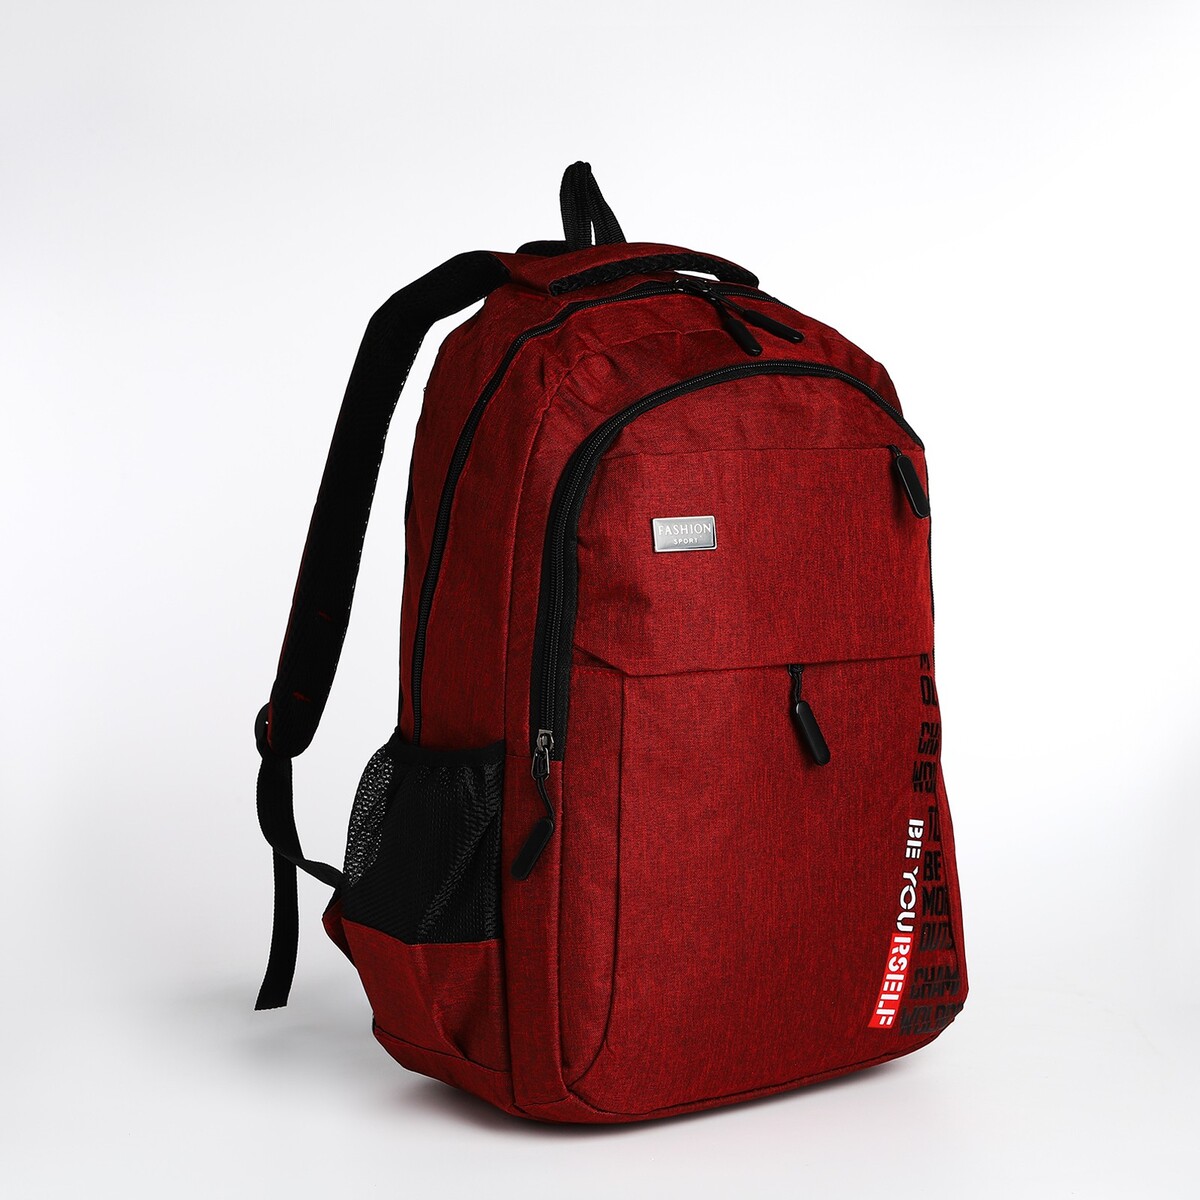 Рюкзак молодежный на молнии, 4 кармана, цвет бордовый рюкзак молодежный из текстиля 4 кармана бордовый